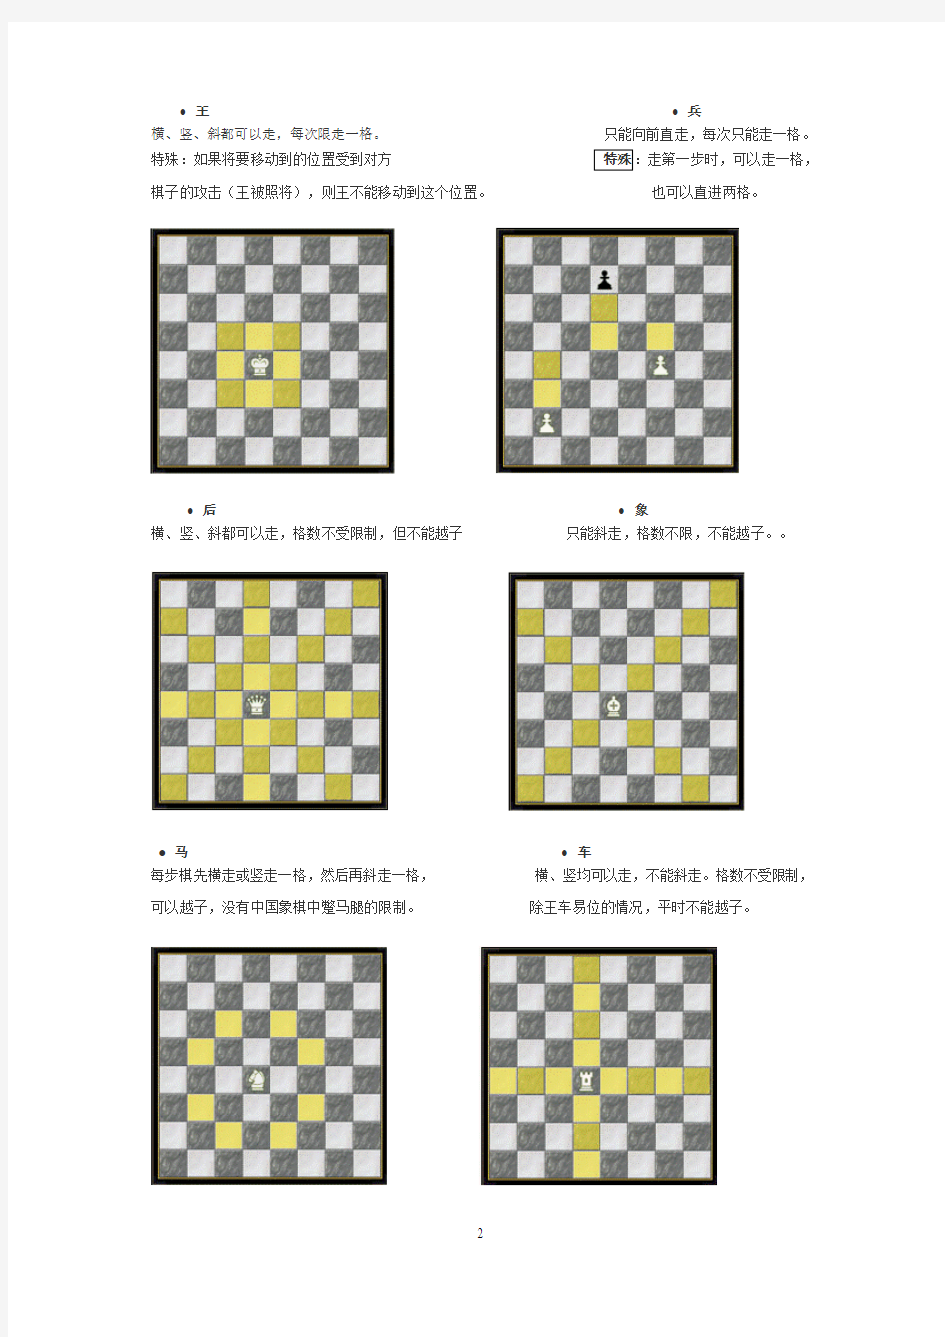 国际象棋游戏规则